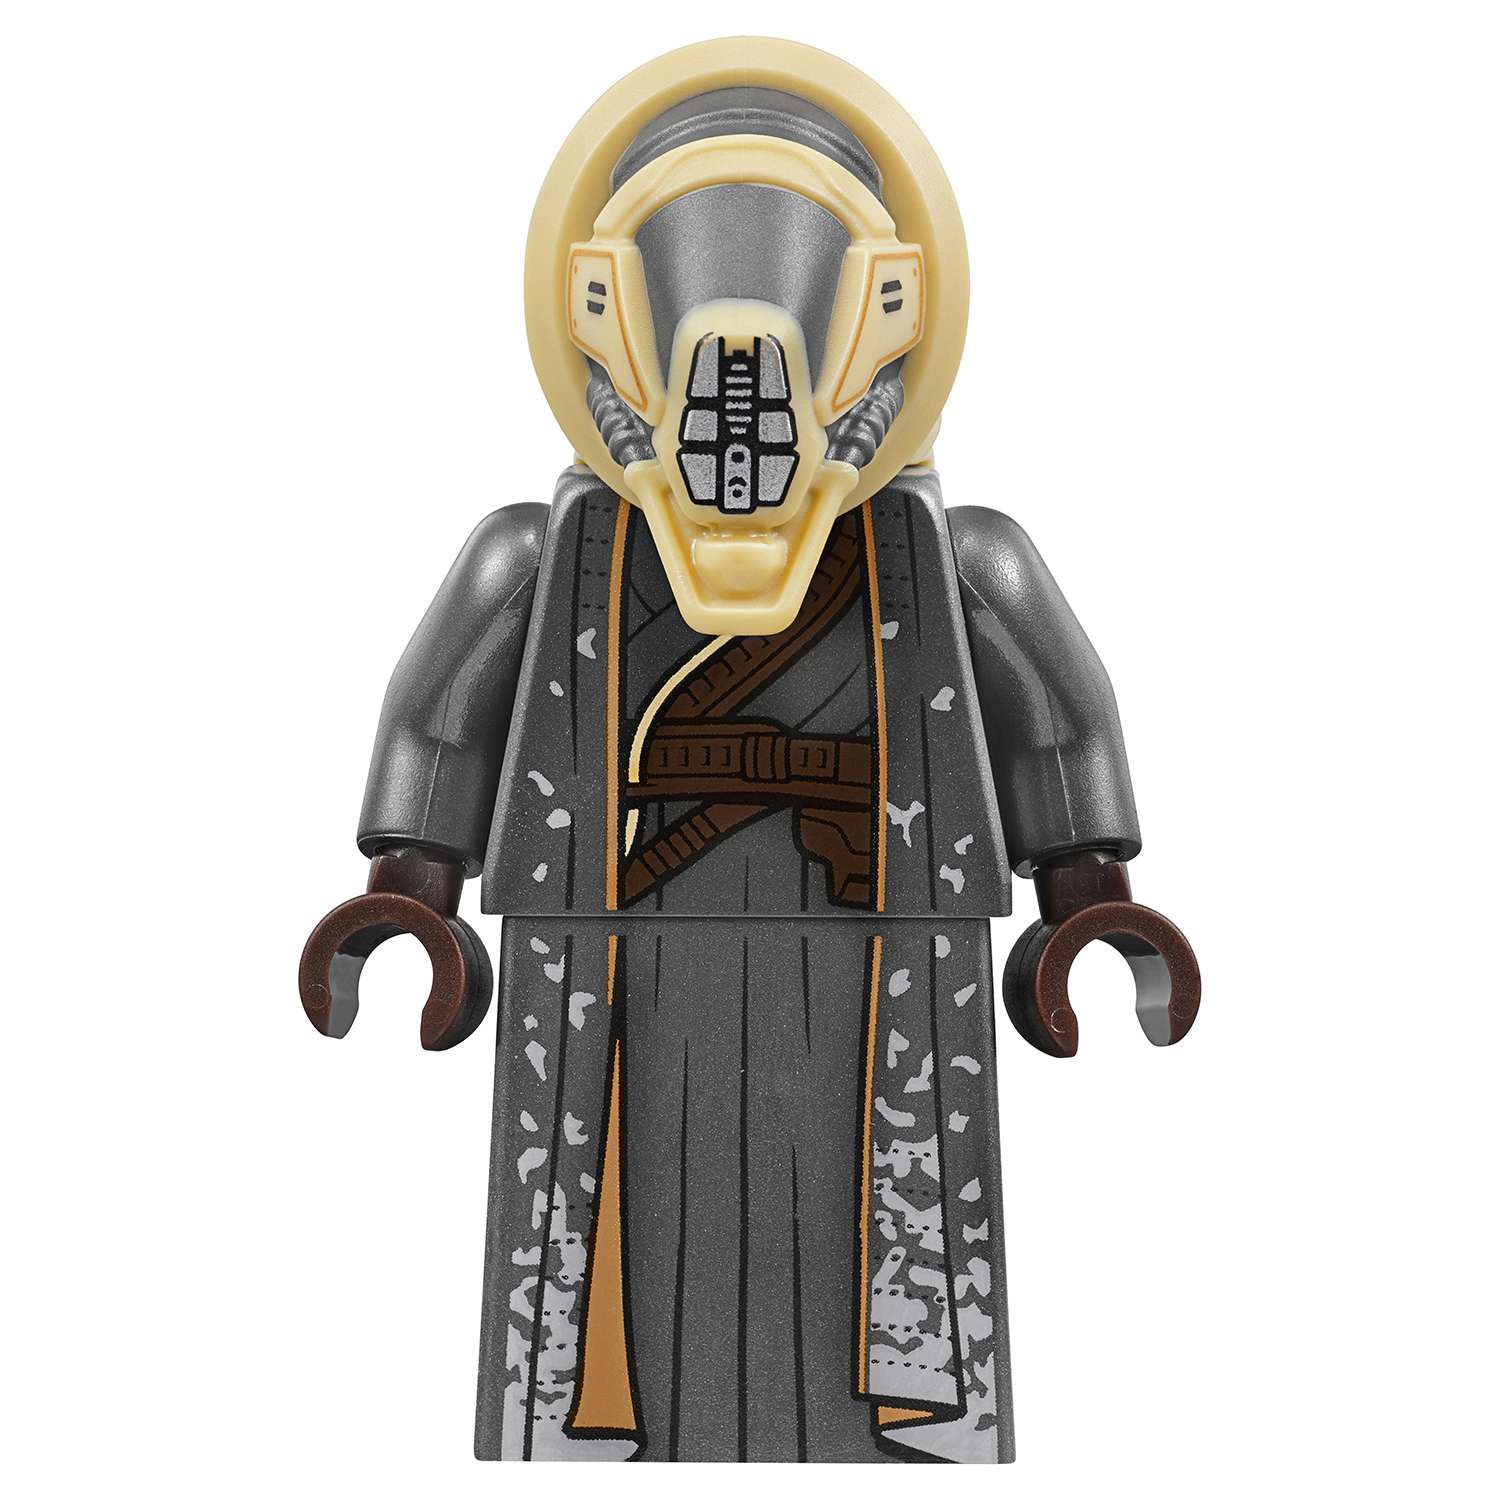 Конструктор LEGO Star Wars Спидер Молоха (75210) - фото 17